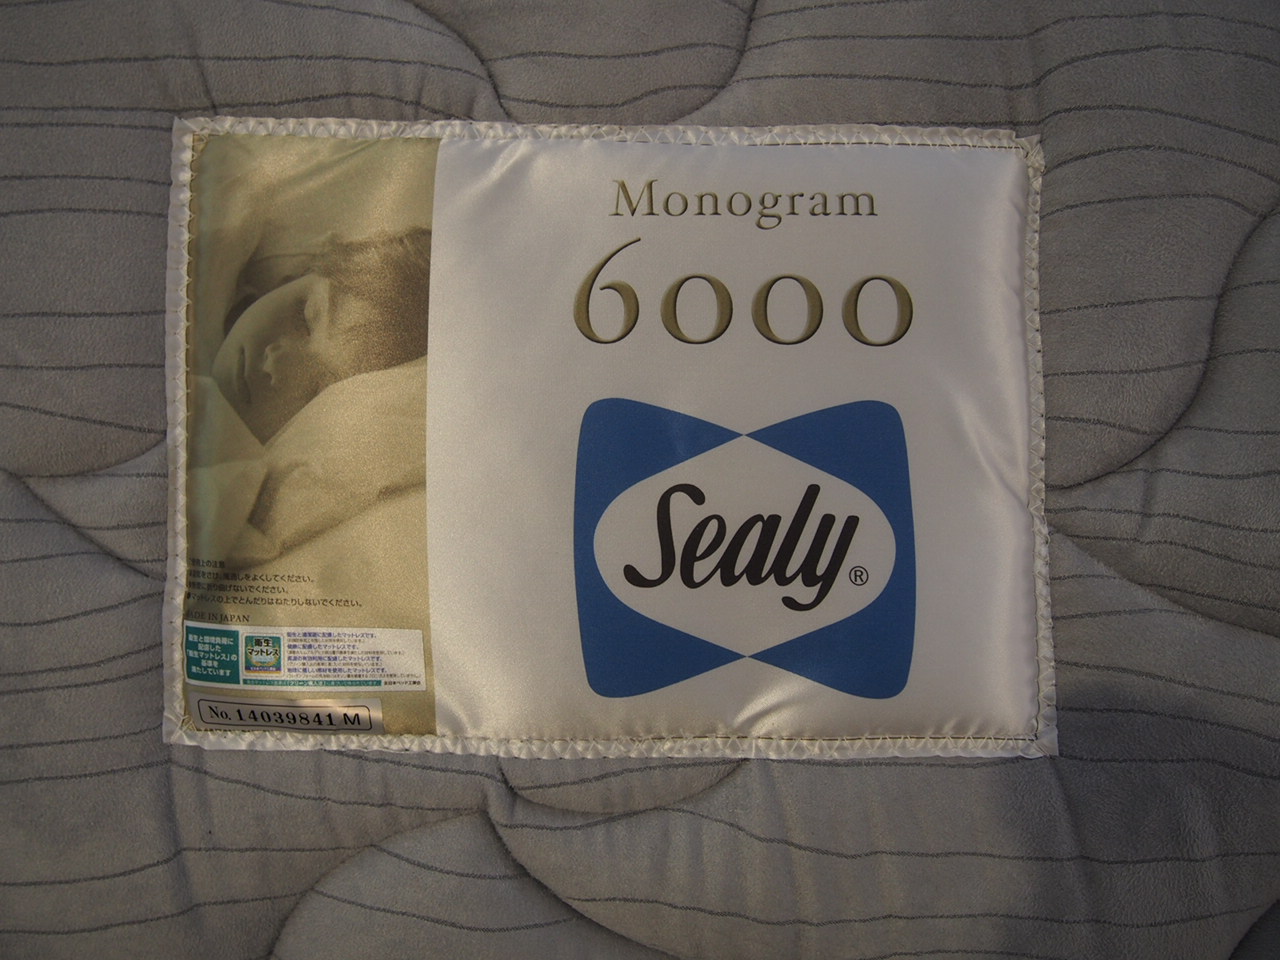 Sealy シーリー monogram6000 モノグラム6000 セミダブルマットレス